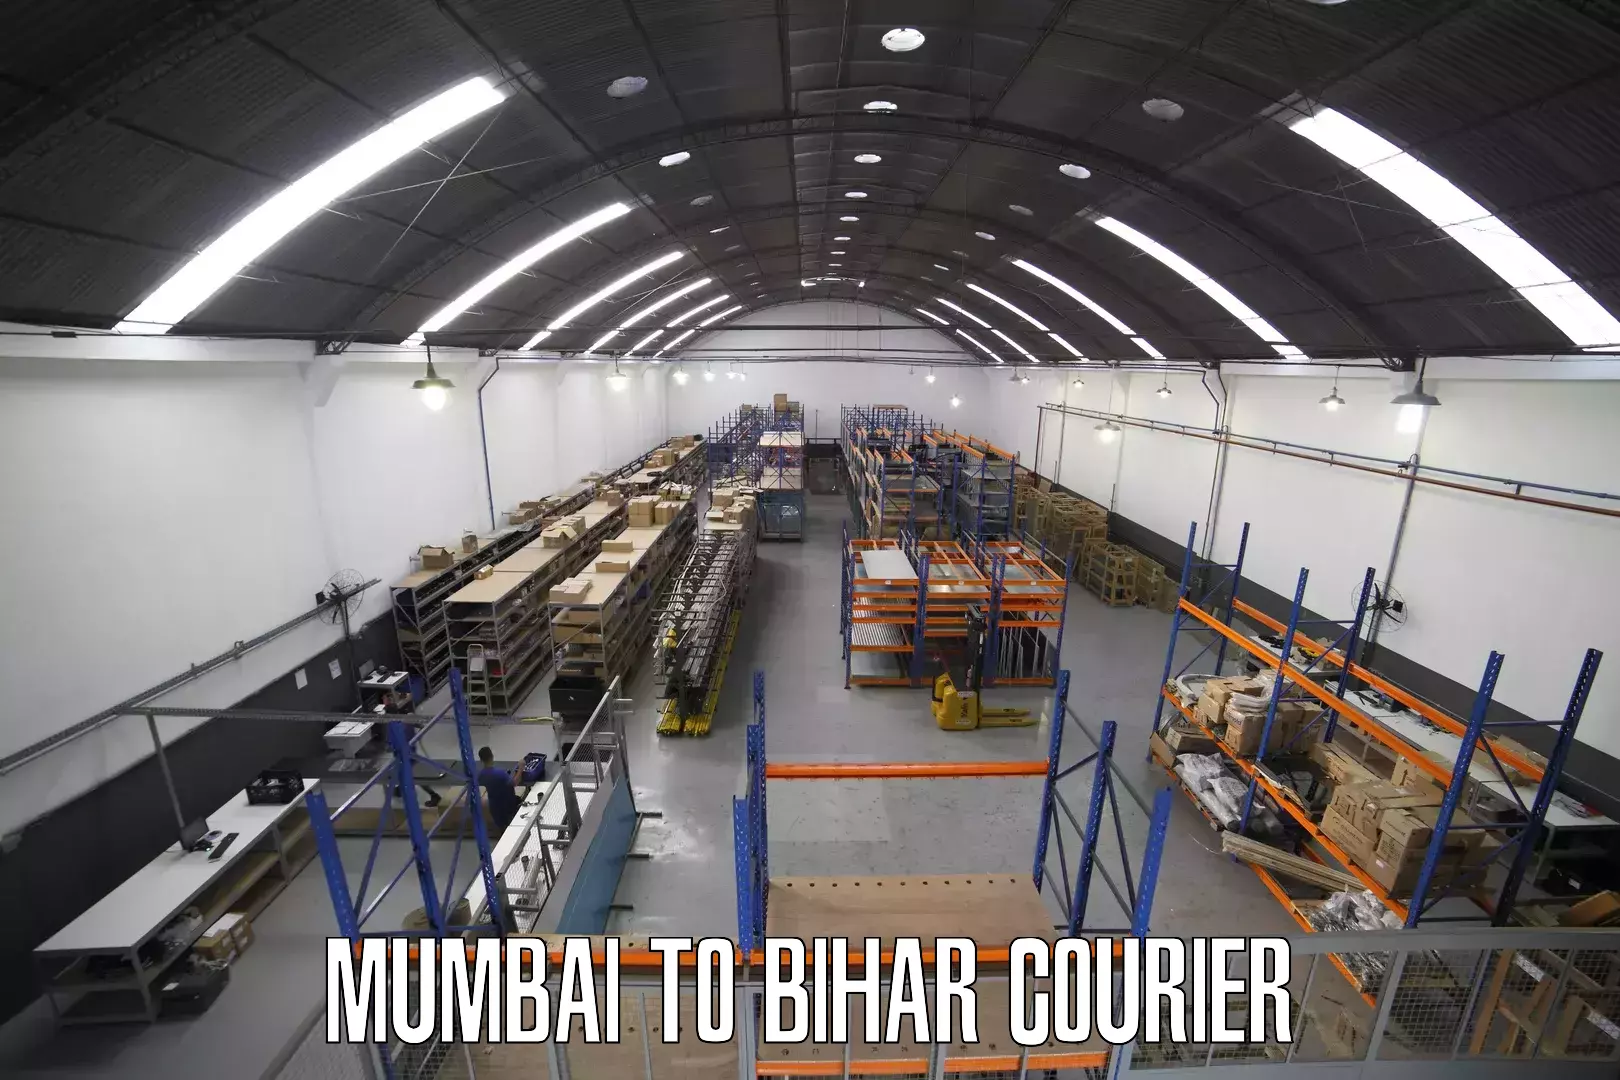 On-call courier service Mumbai to Bihar